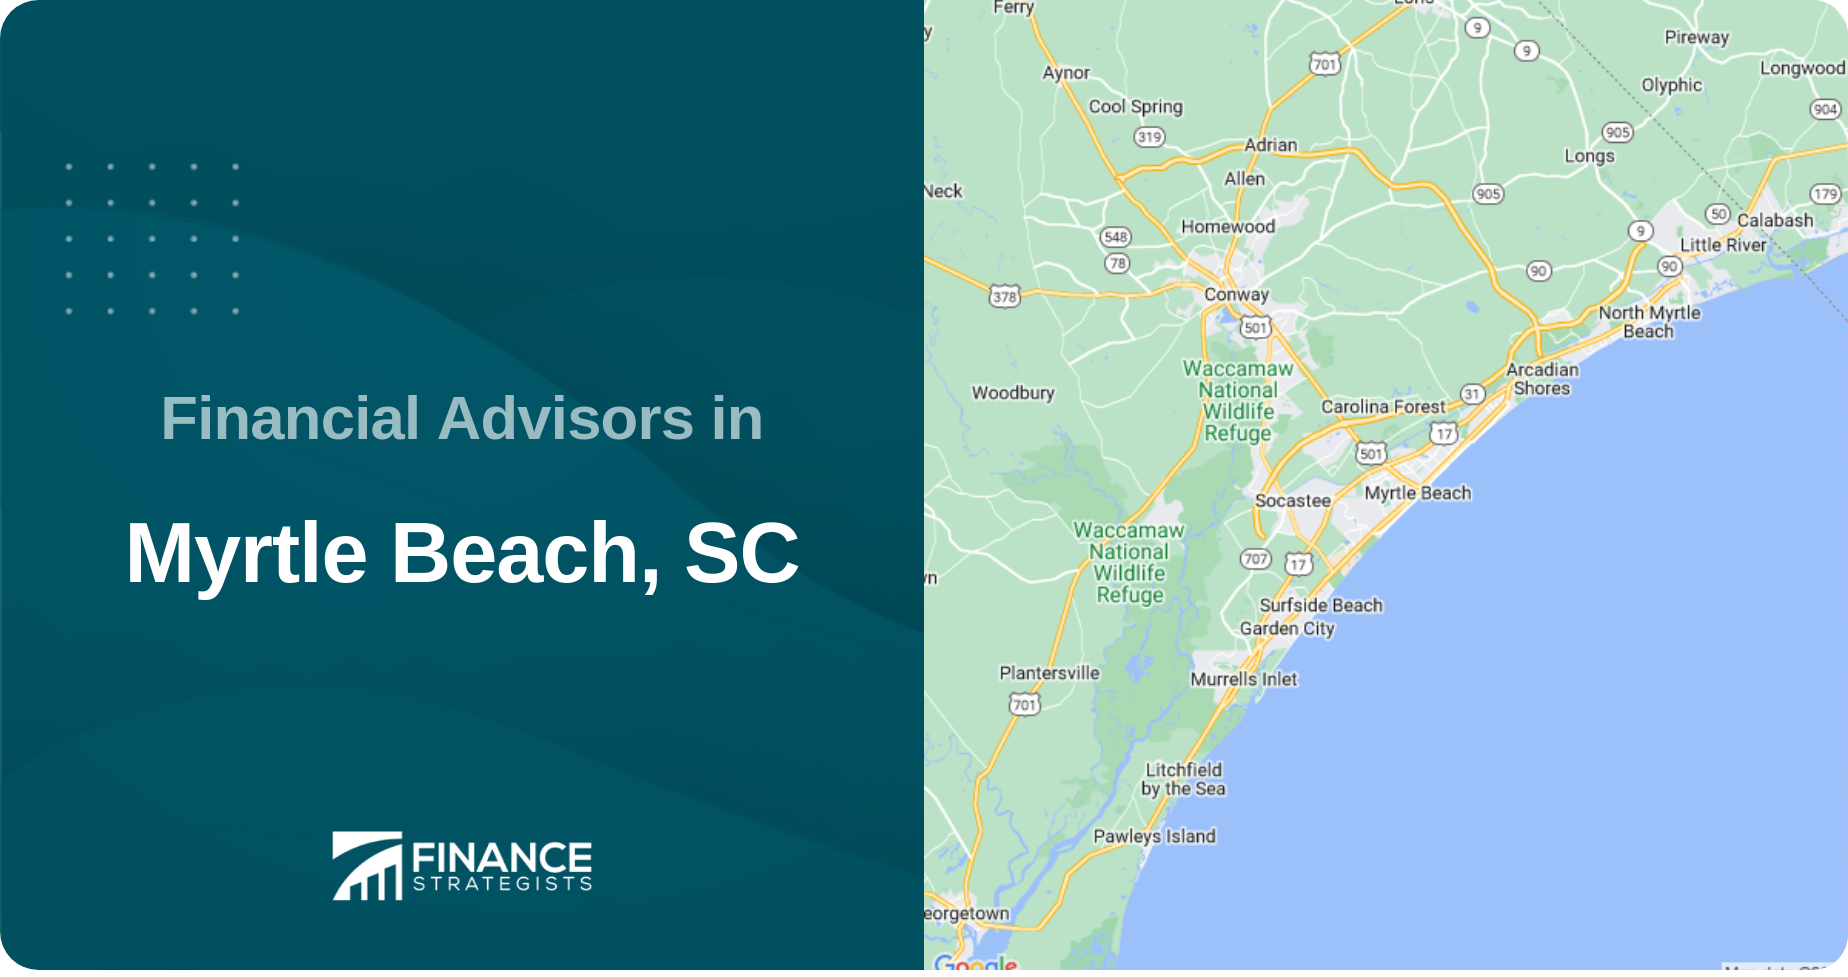 Financial Advisors in Myrtle Beach, SC